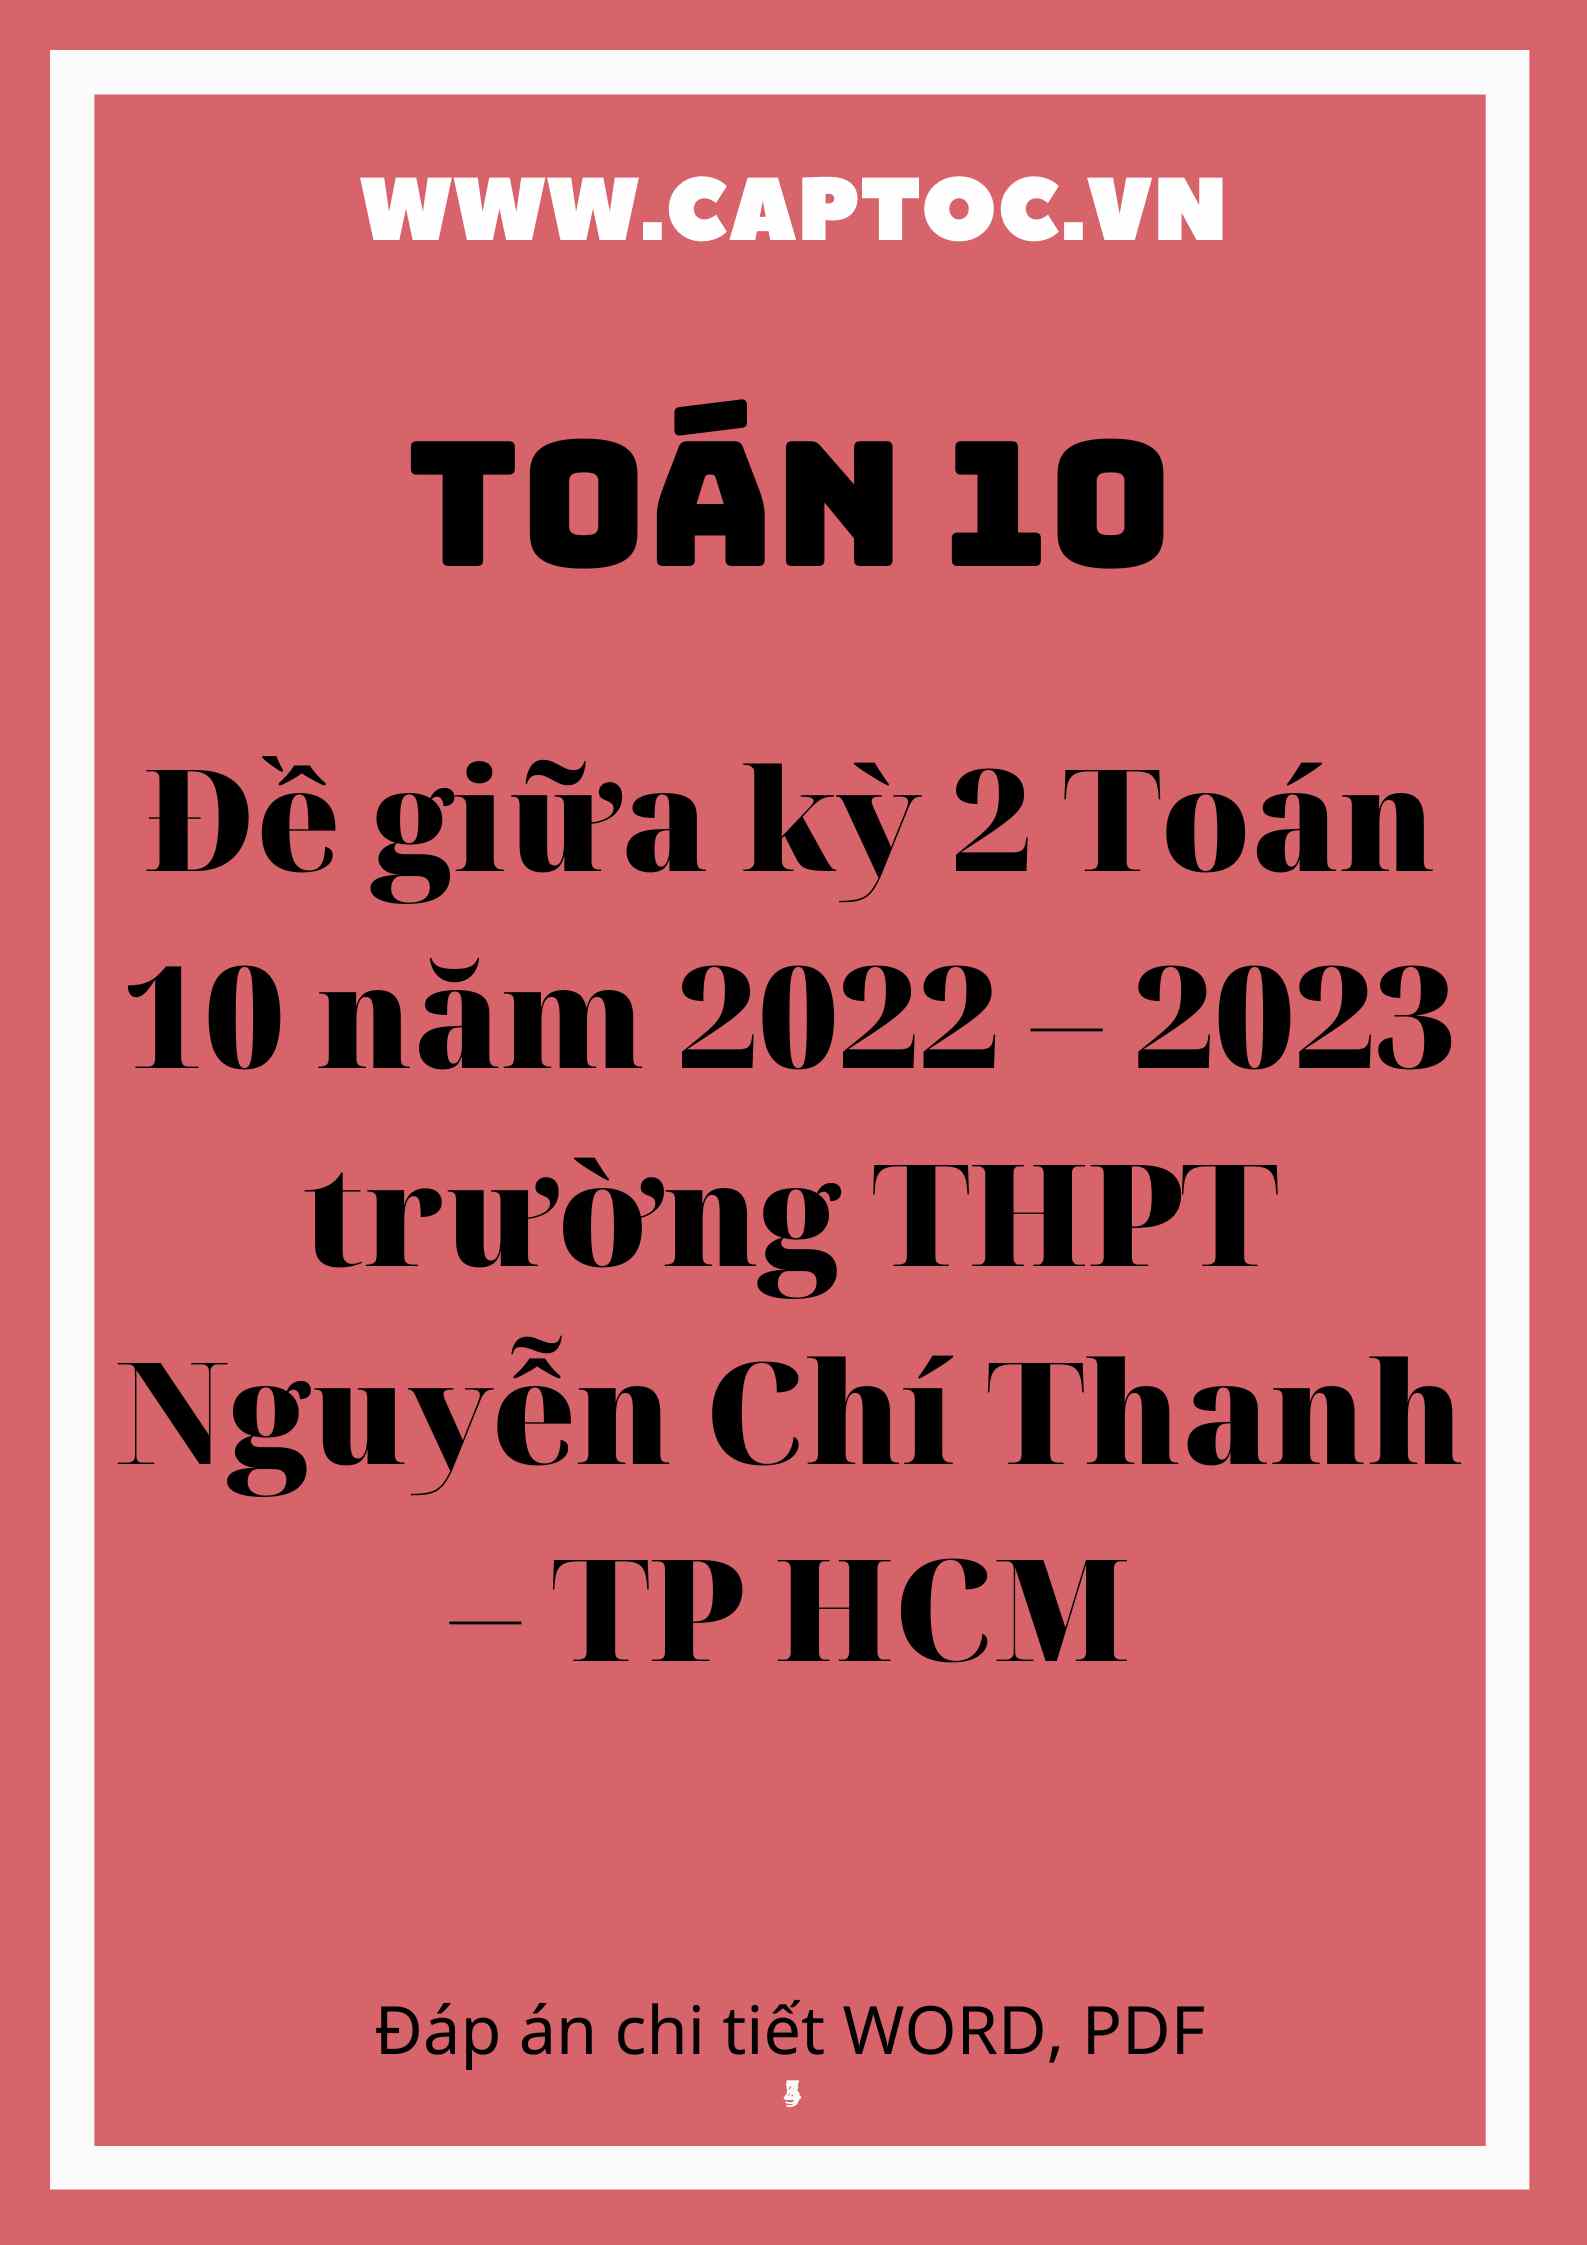 Đề giữa kỳ 2 Toán 10 năm 2022 – 2023 trường THPT Nguyễn Chí Thanh – TP HCM